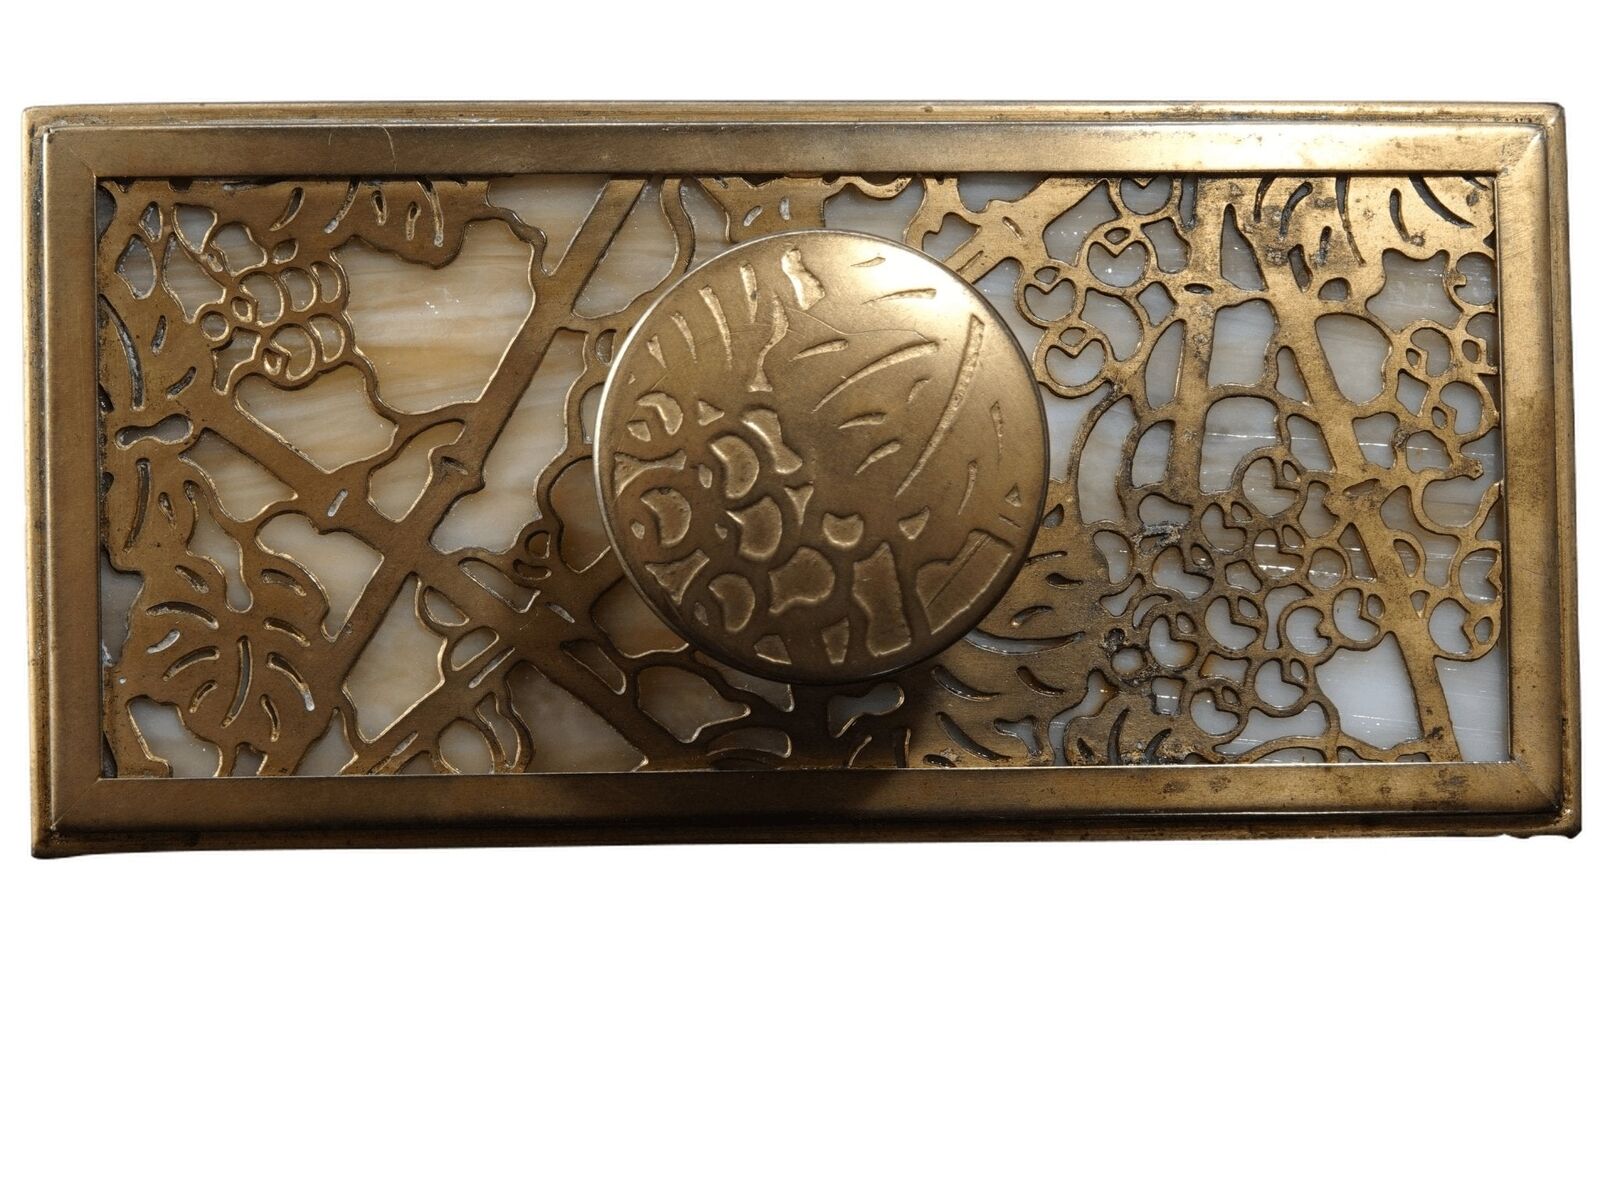 c.1900 Tiffany Bronze Dore Grapevine Slag glass rocker blotter